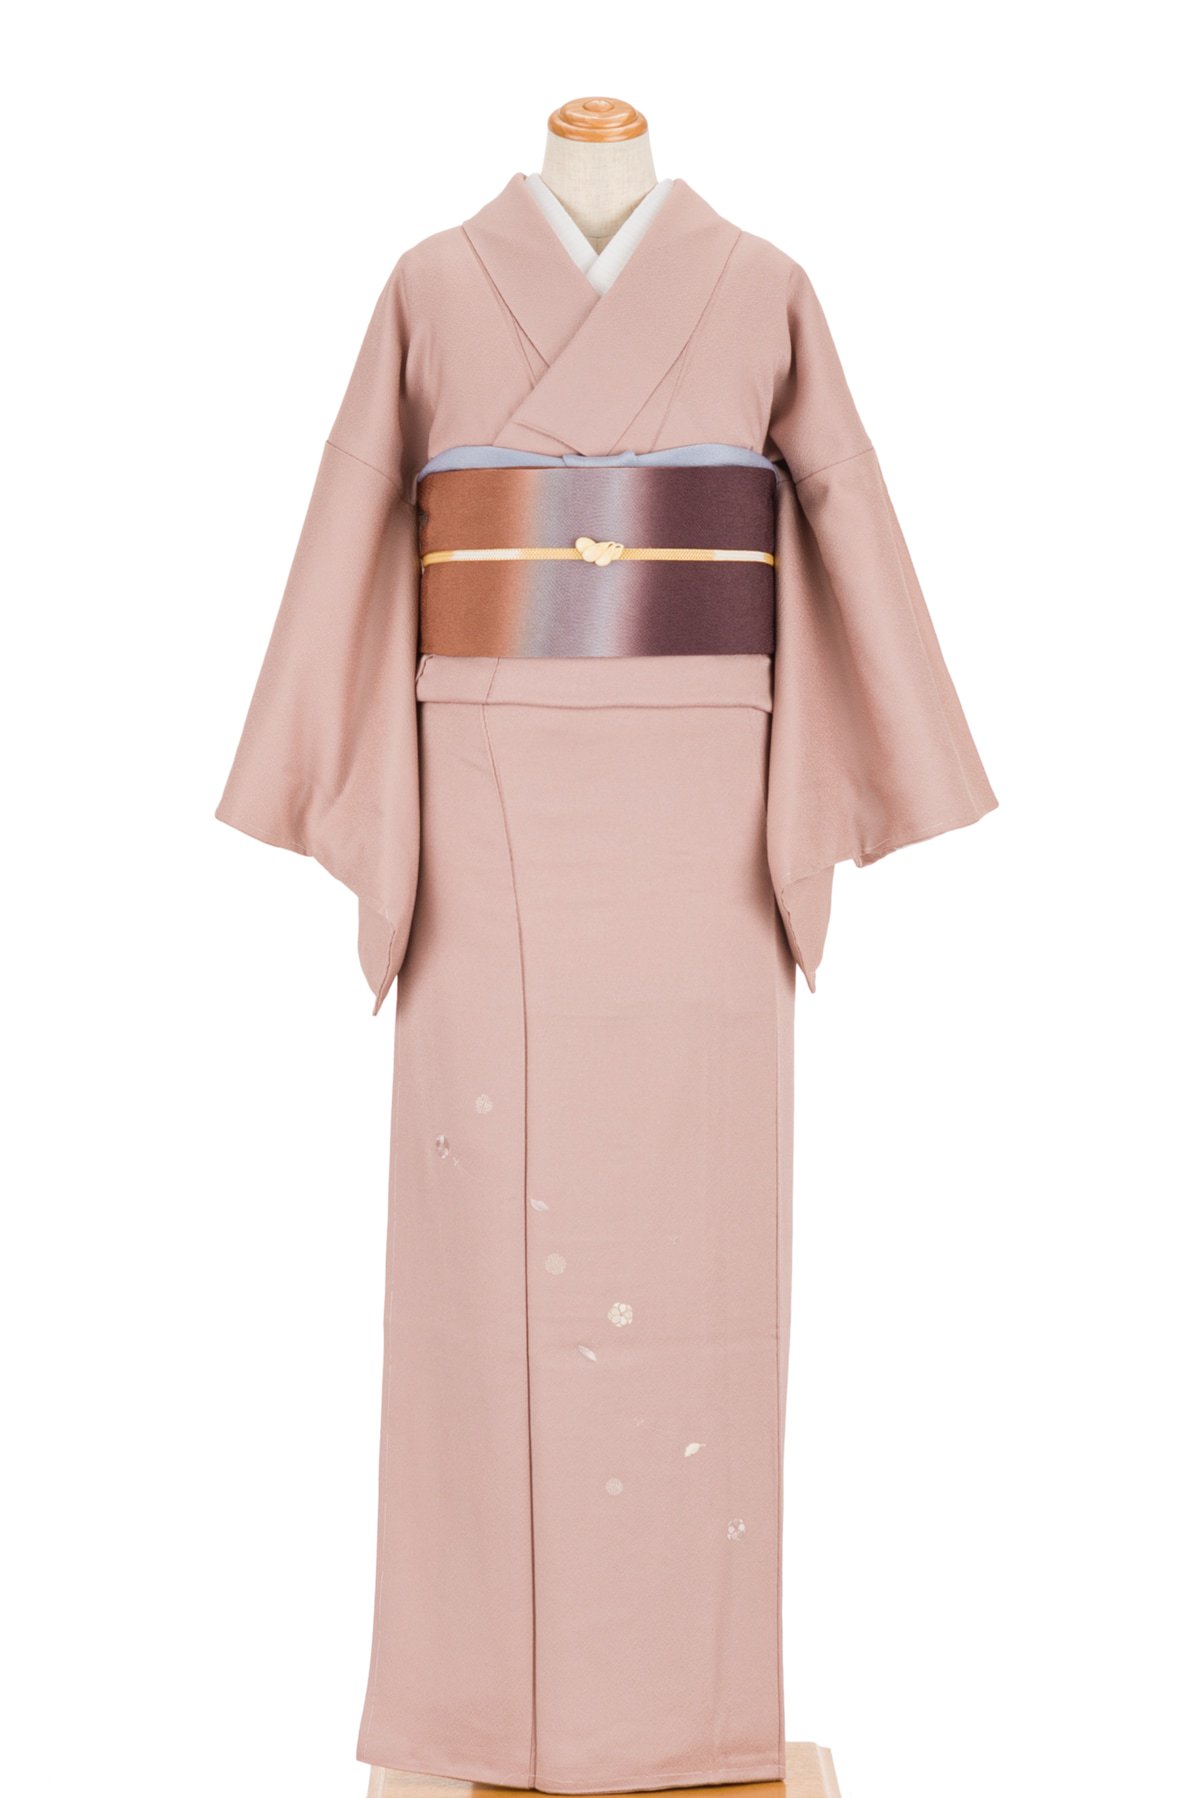 刺繍の入った桜色の着物 - 着物・浴衣